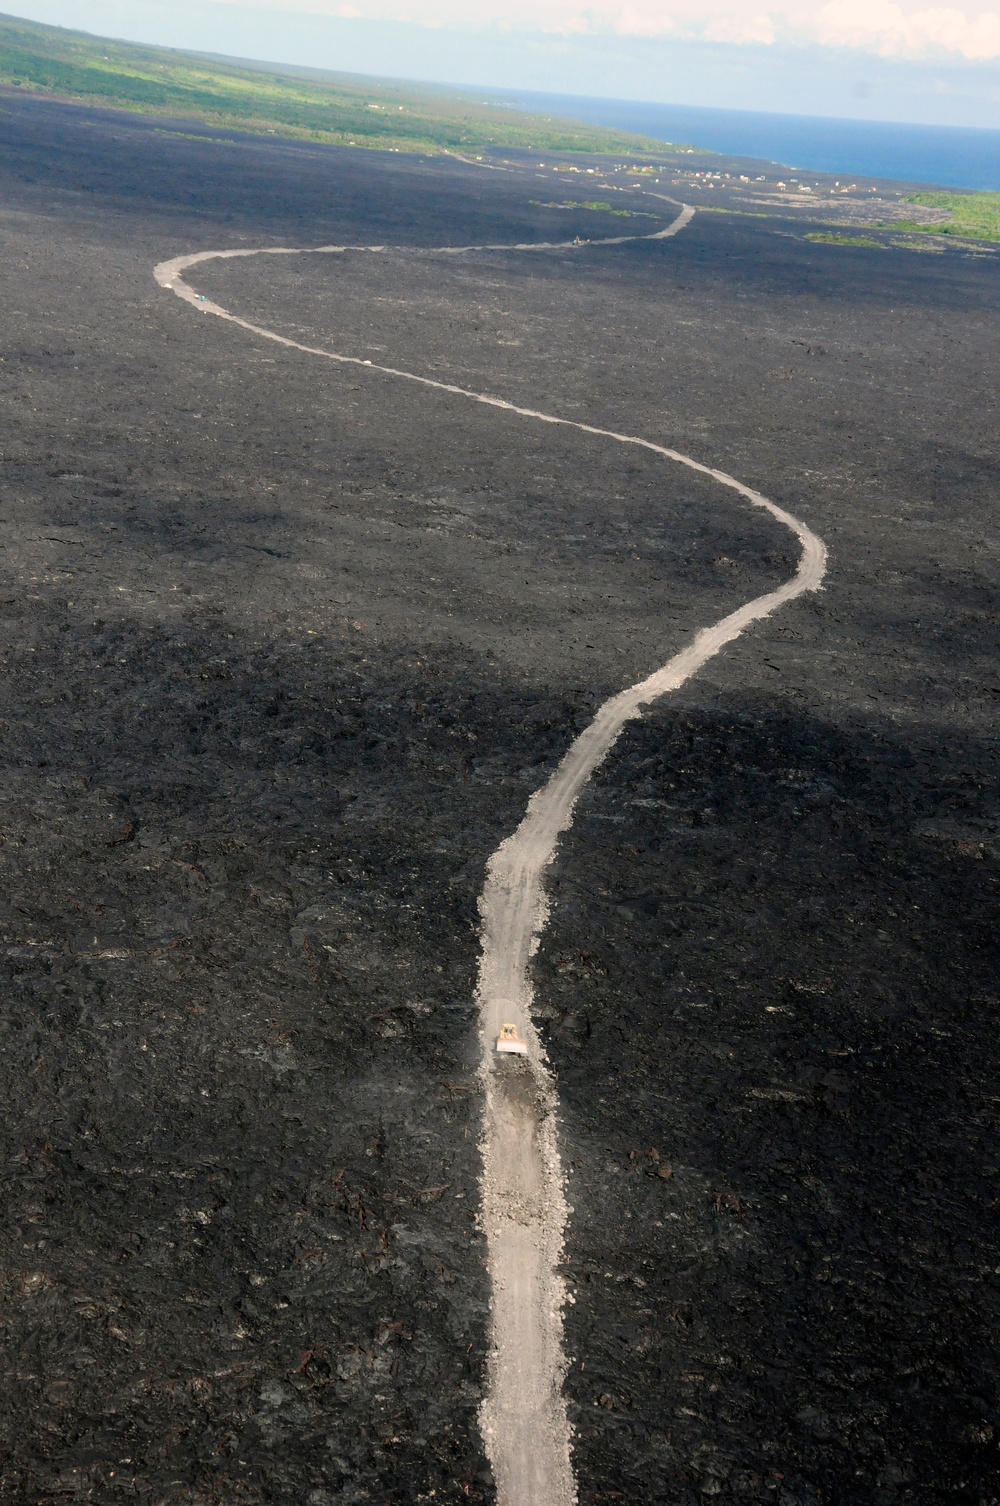 Pahoa lava flow aerials